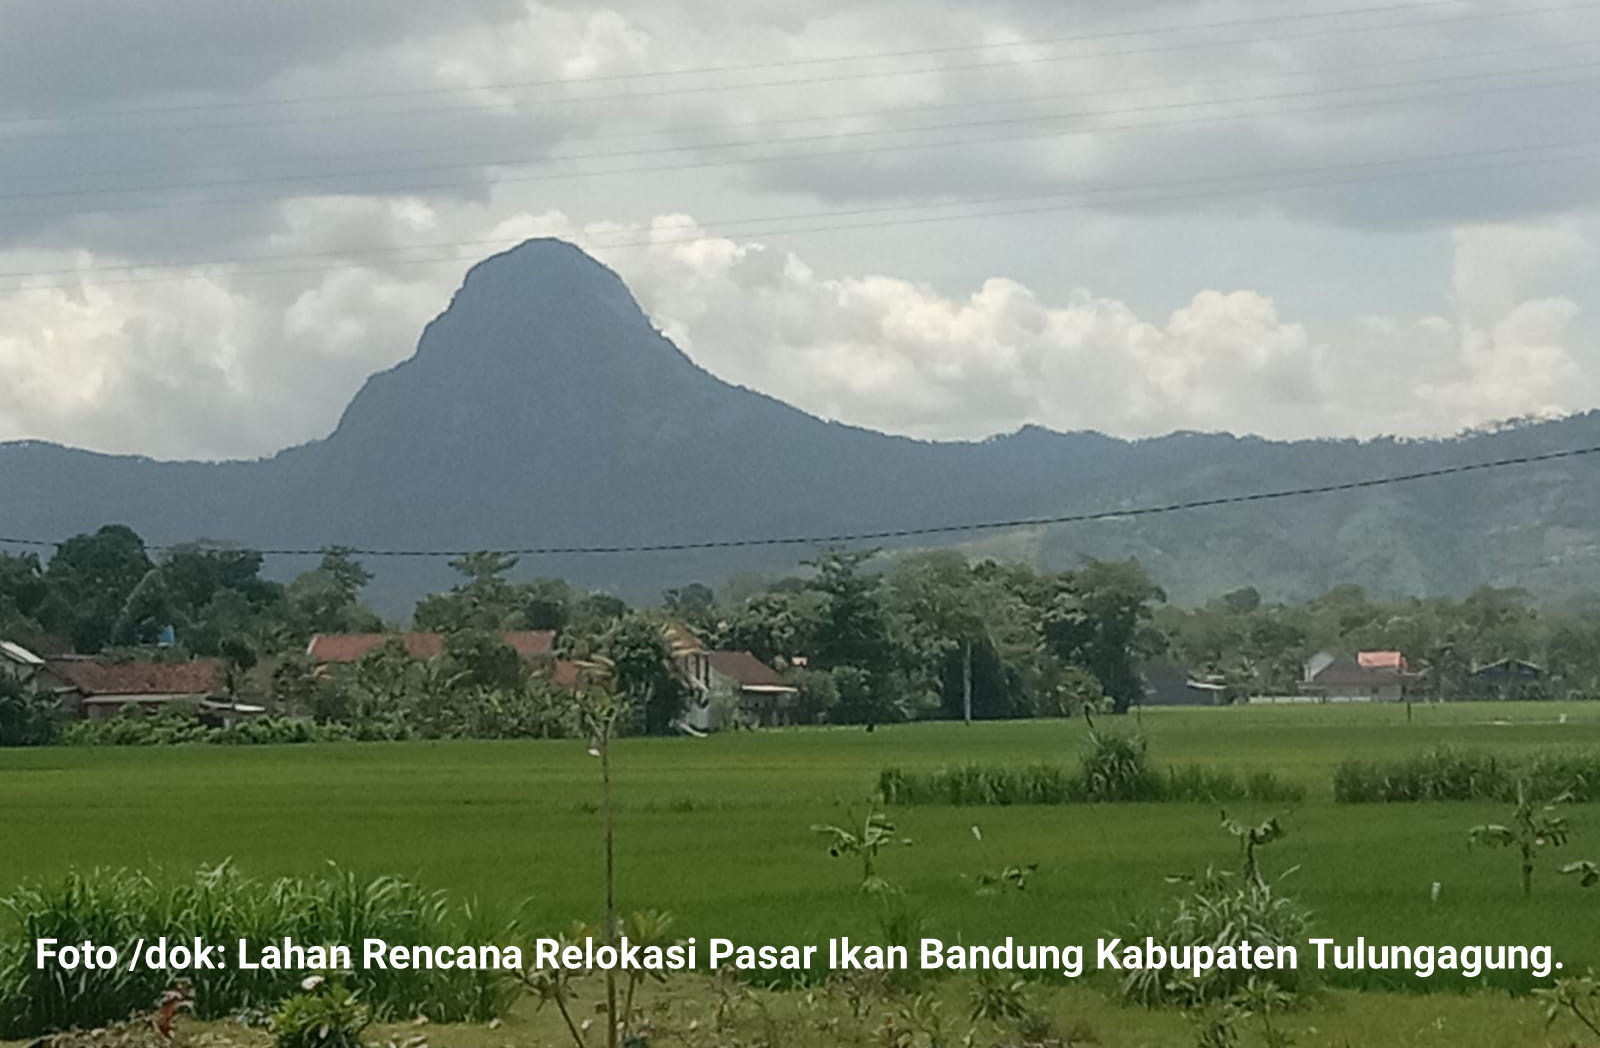 Rencana Relokasi Pasar Ikan Bandung Kabupaten Tulungagung, Ini Kata Kades Suwaru